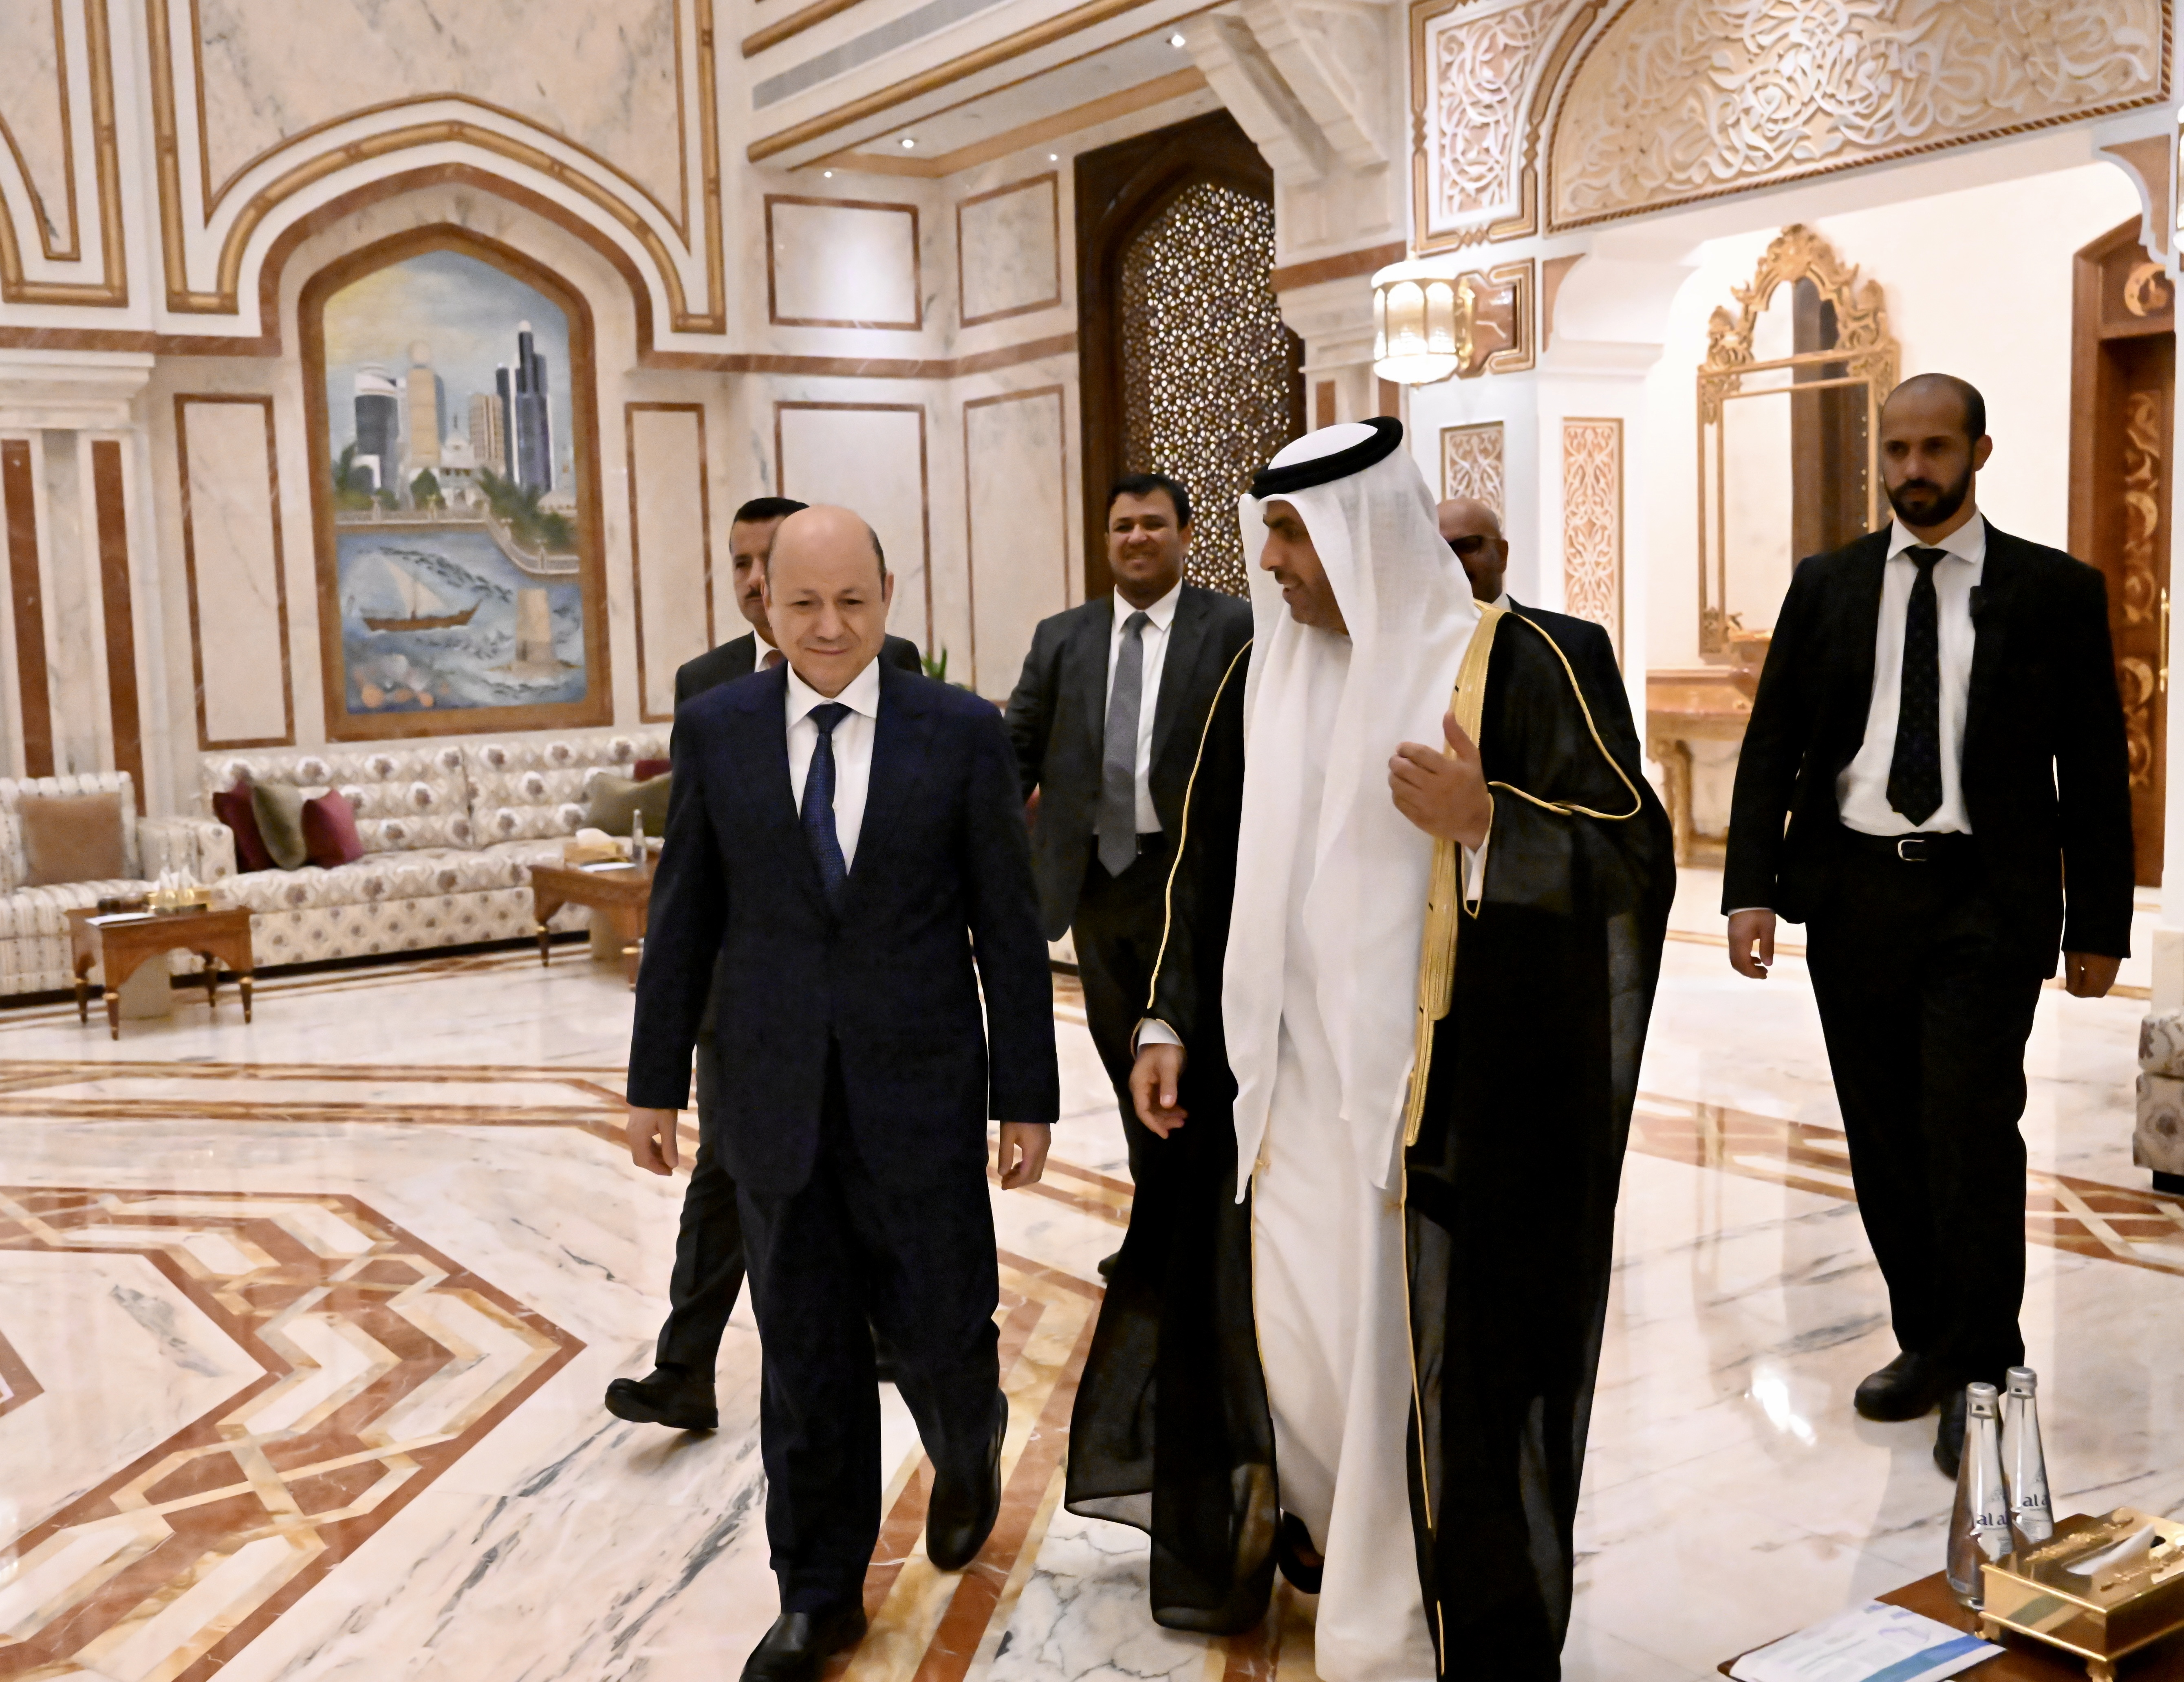 وصول فخامة الرئيس رشاد العليمي إلى العاصمة الإماراتية أبو ظبي  29 نوفمبر 2022